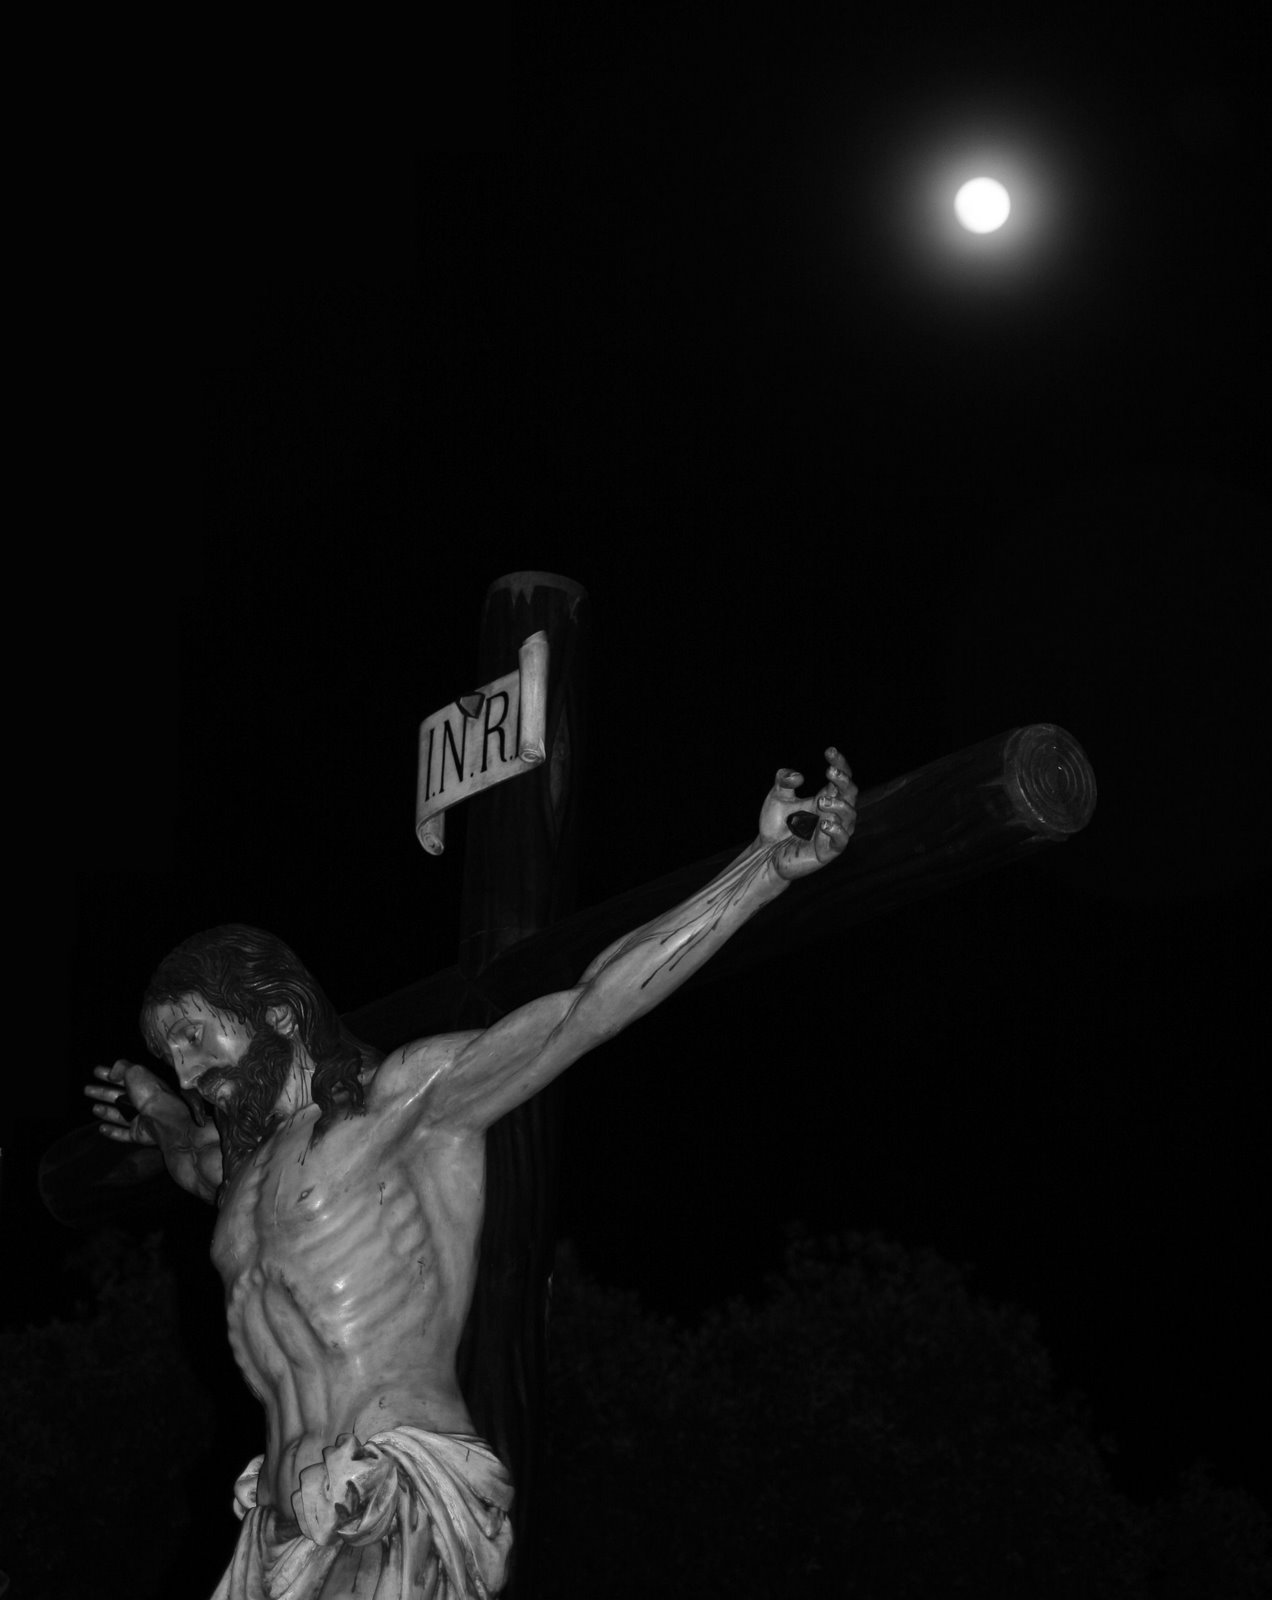 Photo description: Figura de Jesucristo crucificado, de noche, con la Luna de fondo.